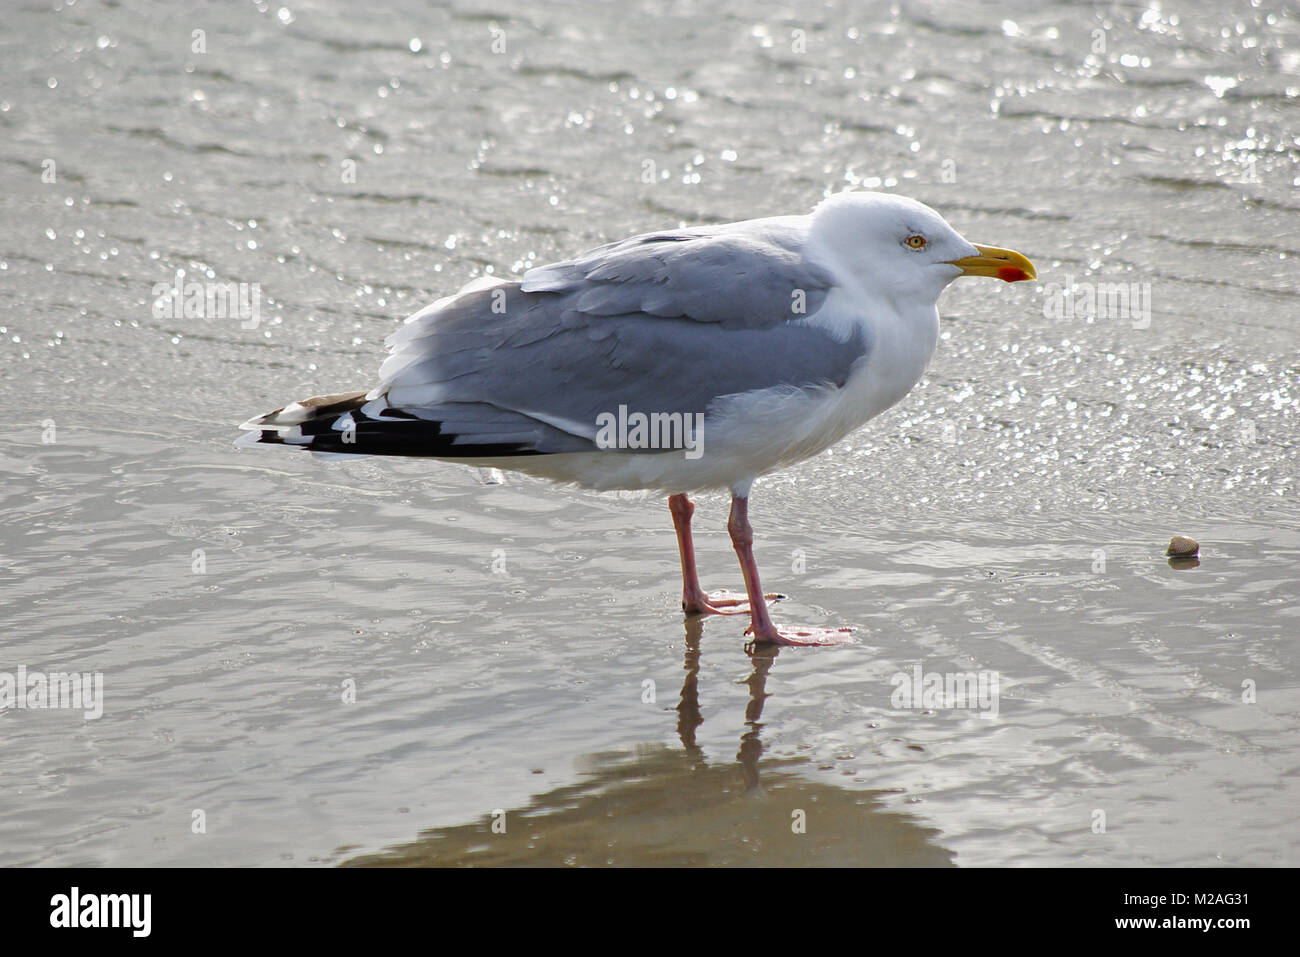 Herring gull standing in the mudflats Stock Photo